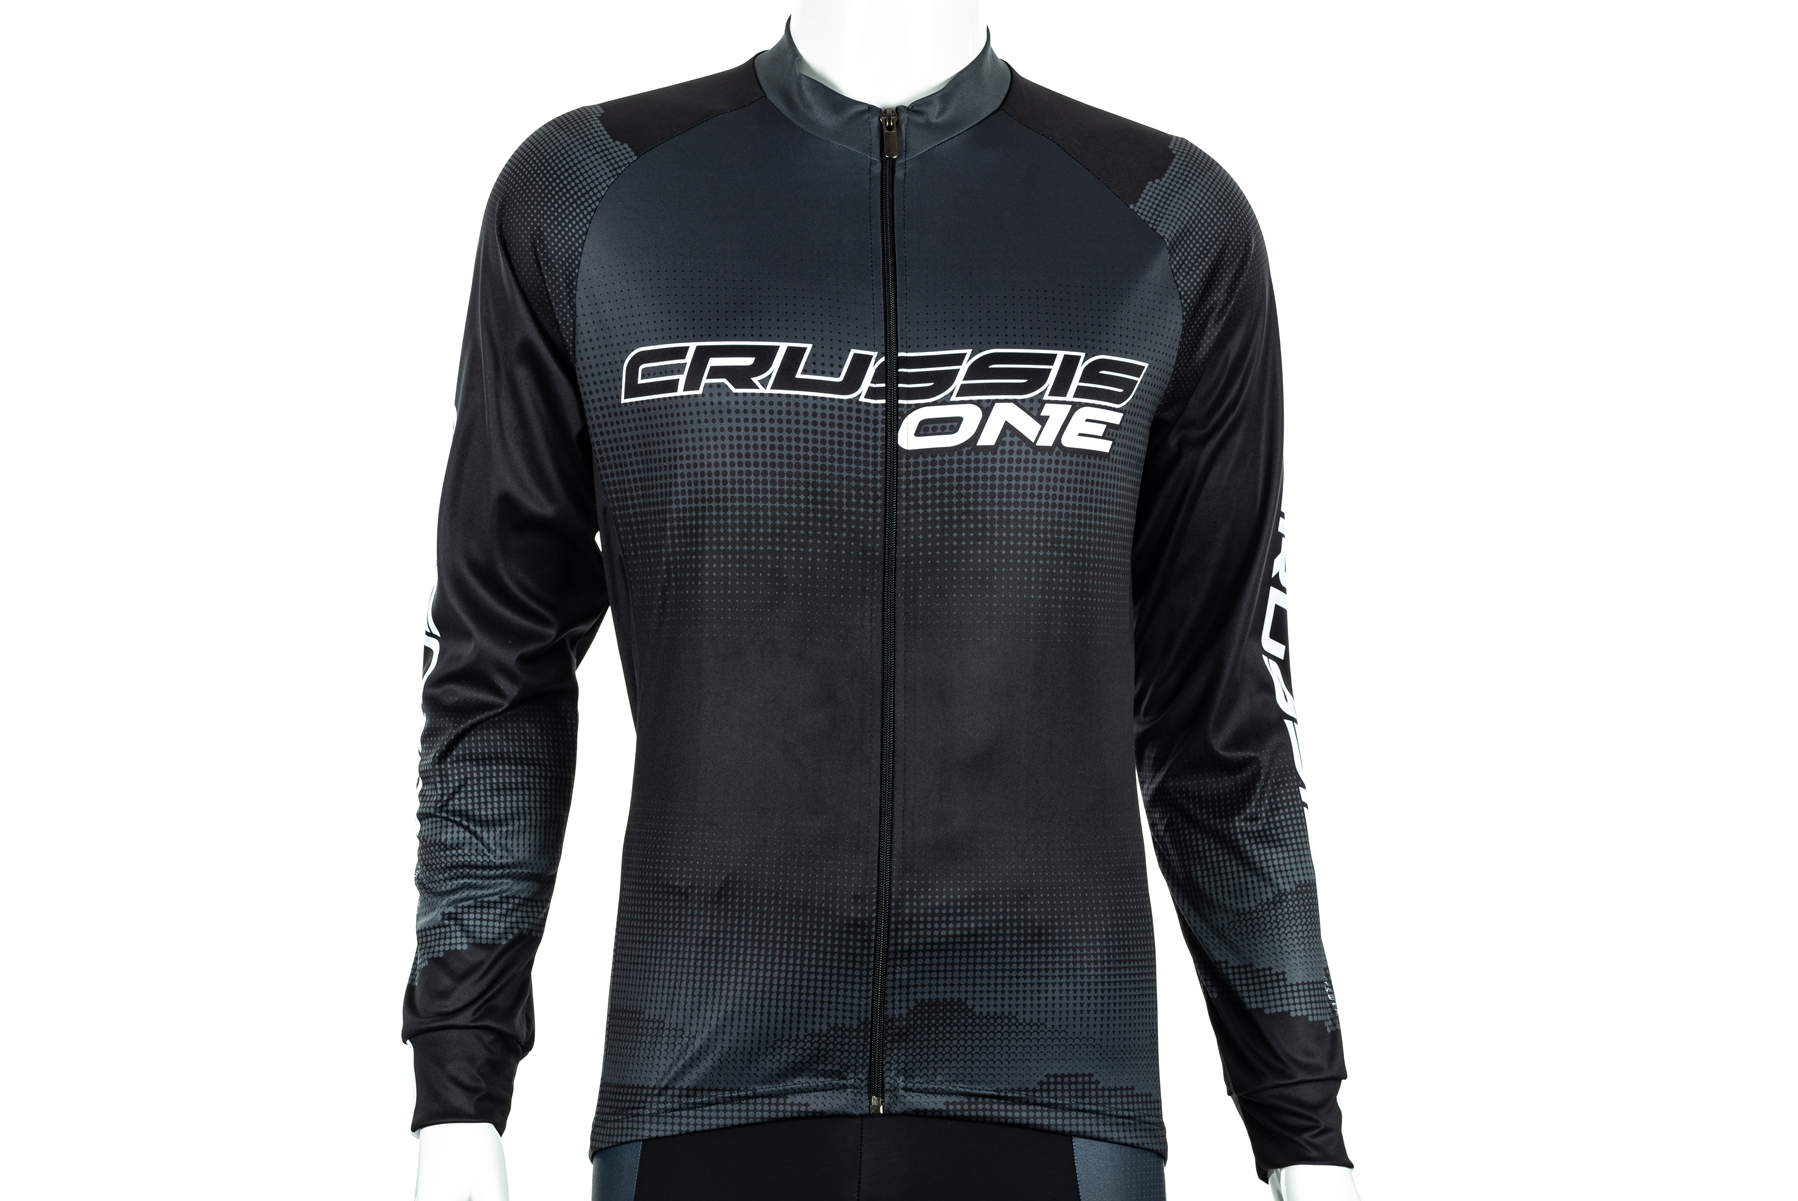 Cyklistický dres CRUSSIS - ONE, dlouhý rukáv, černá/bílá